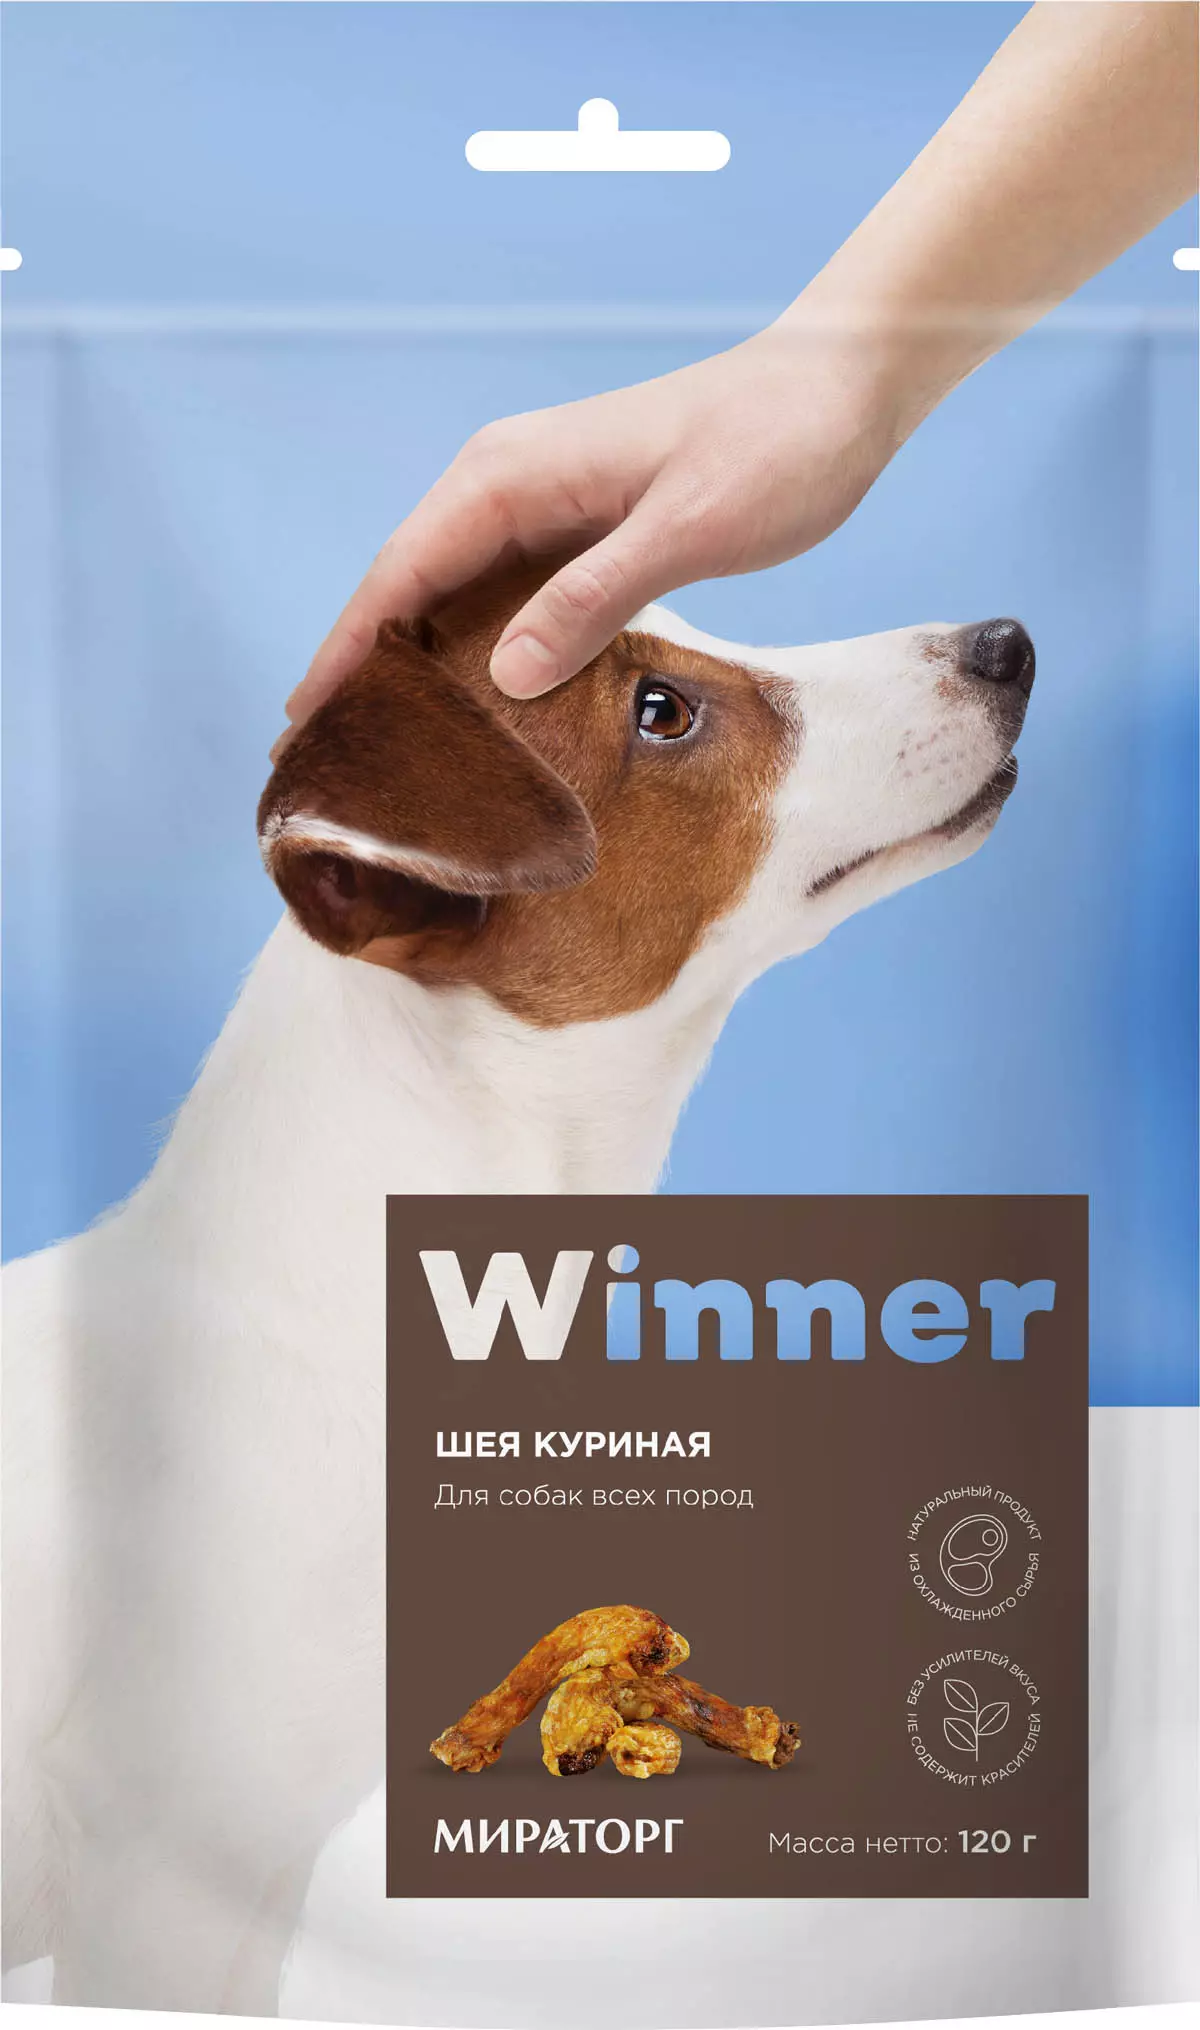 Alimentare pentru câini Câștigătorul 